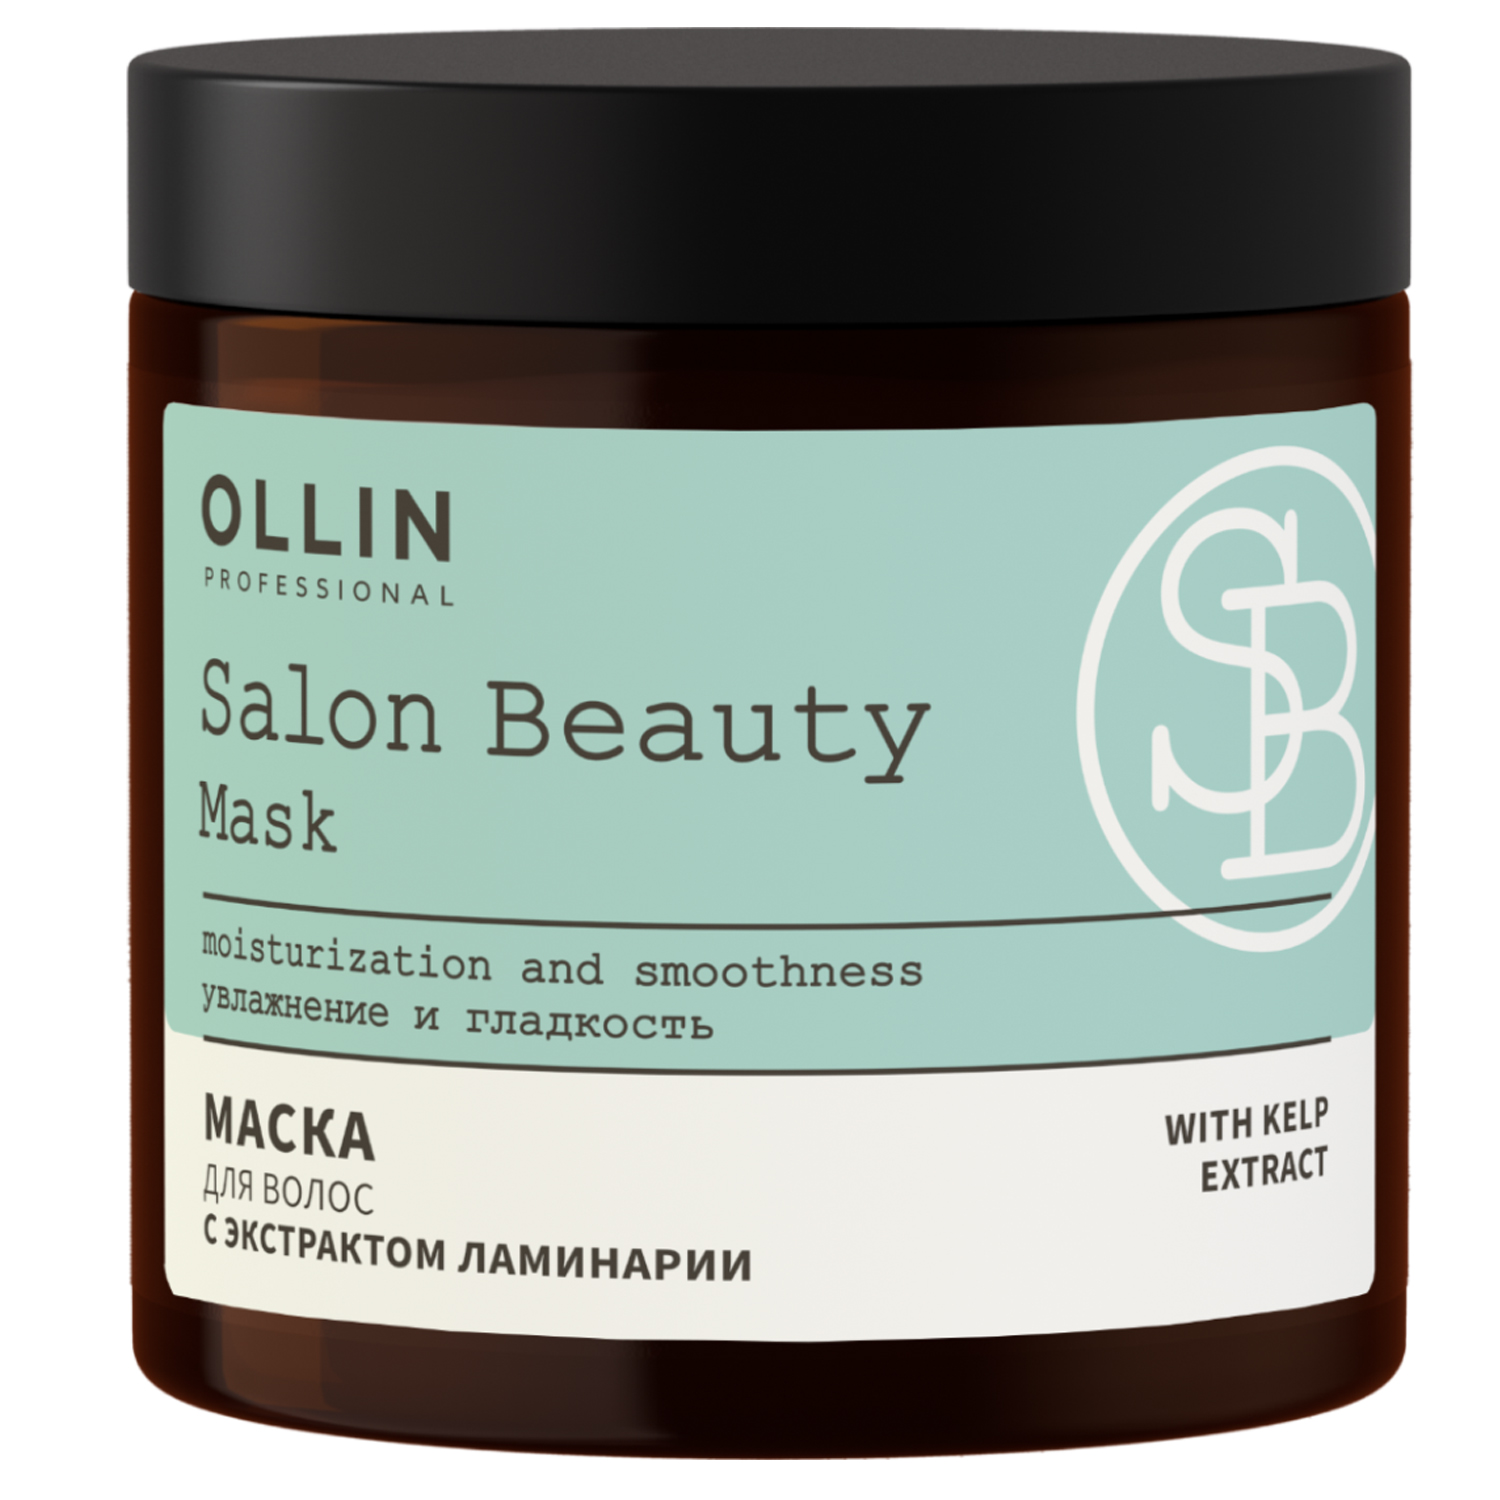 Ollin Professional Маска для волос с экстрактом ламинарии, 500 мл (Ollin Professional, Salon Beauty) маска для волос ollin professional с экстрактом ламинарии 500 мл в megalopolis professionals